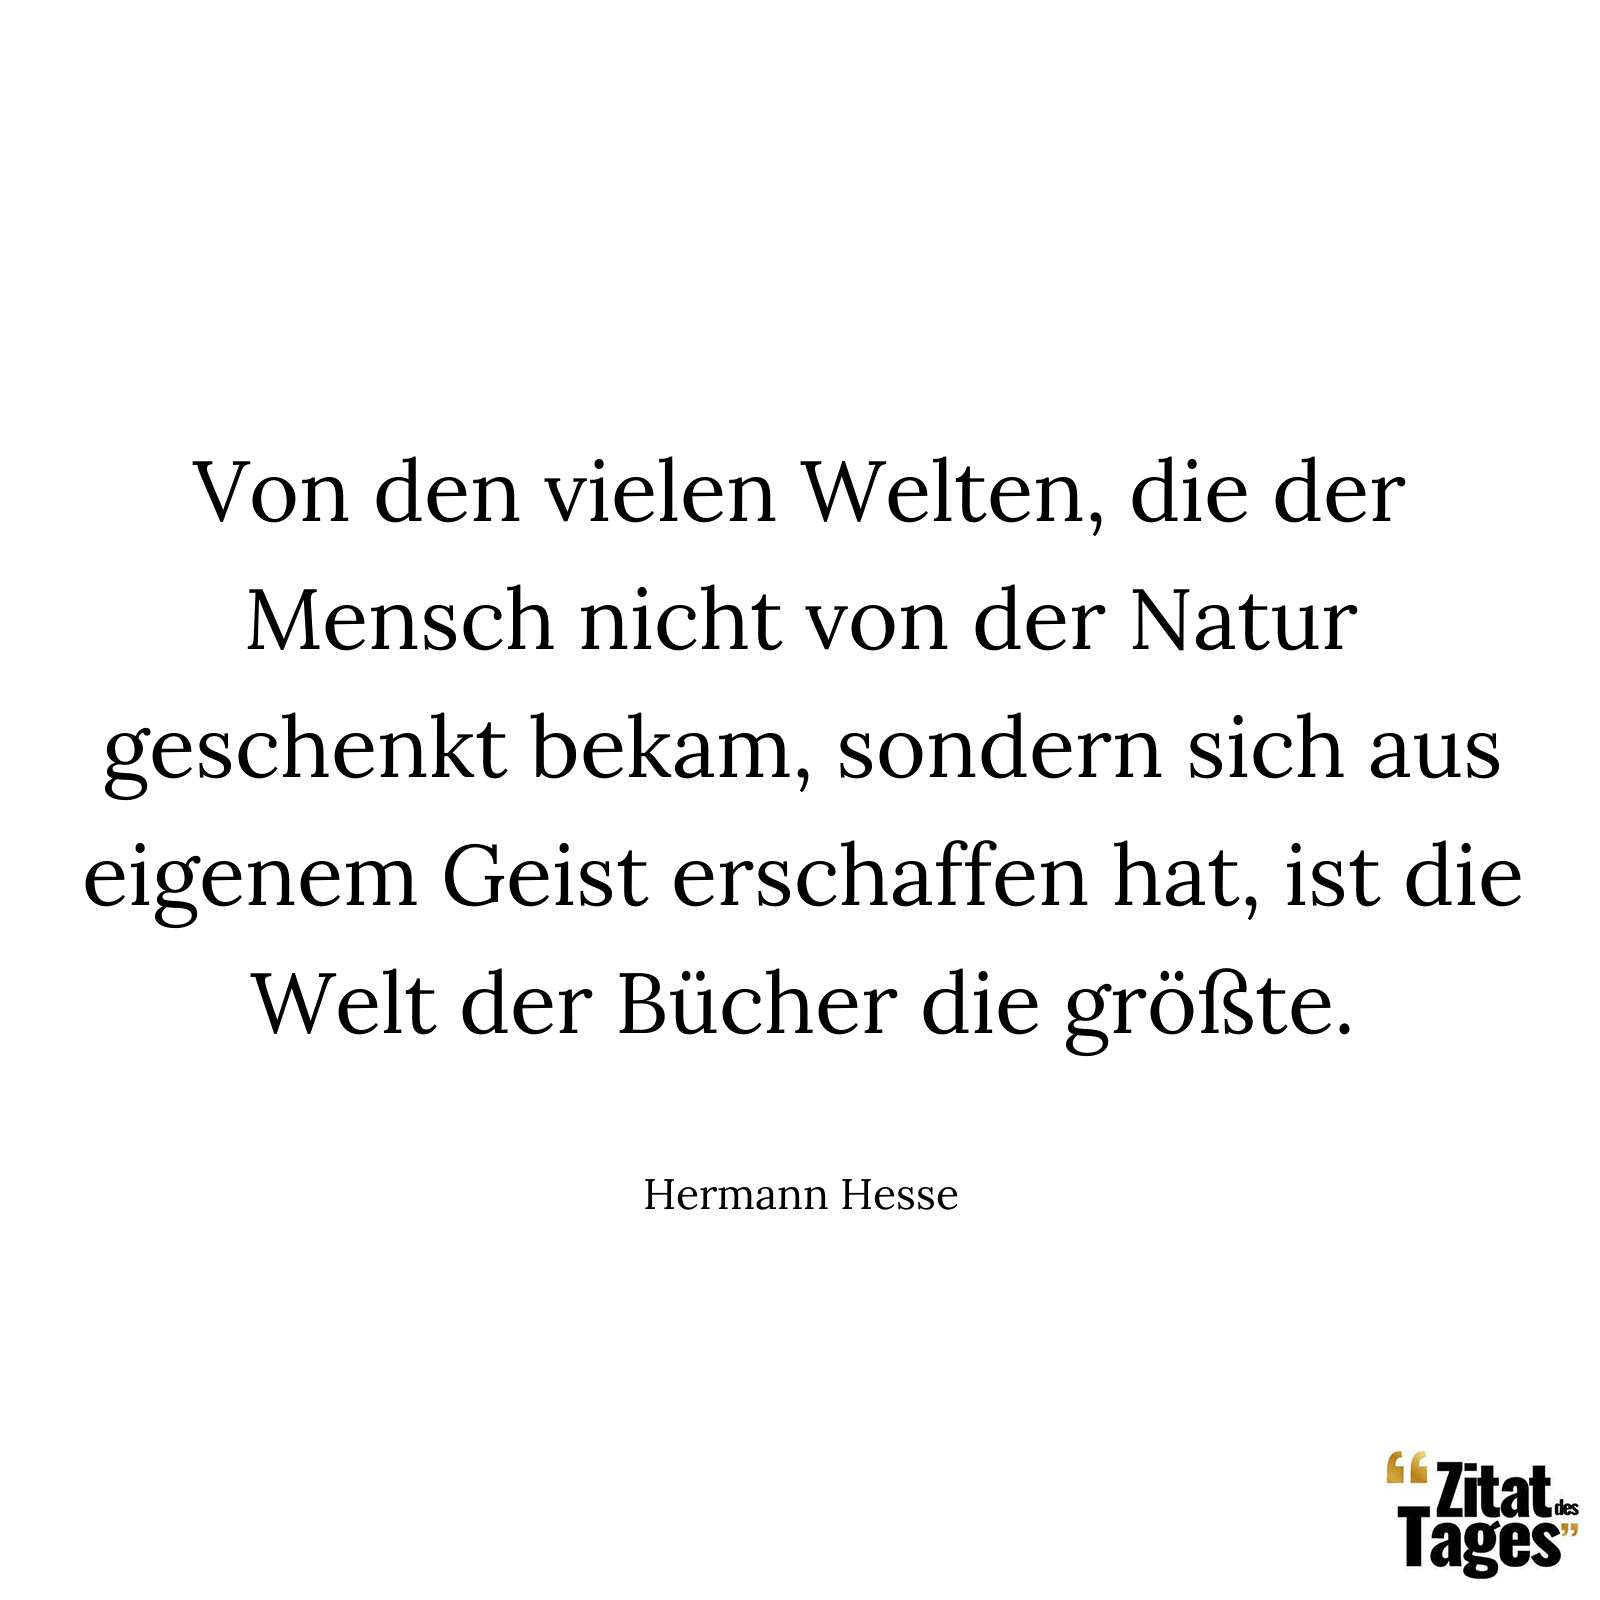 Von den vielen Welten, die der Mensch nicht von der Natur geschenkt bekam, sondern sich aus eigenem Geist erschaffen hat, ist die Welt der Bücher die größte. - Hermann Hesse